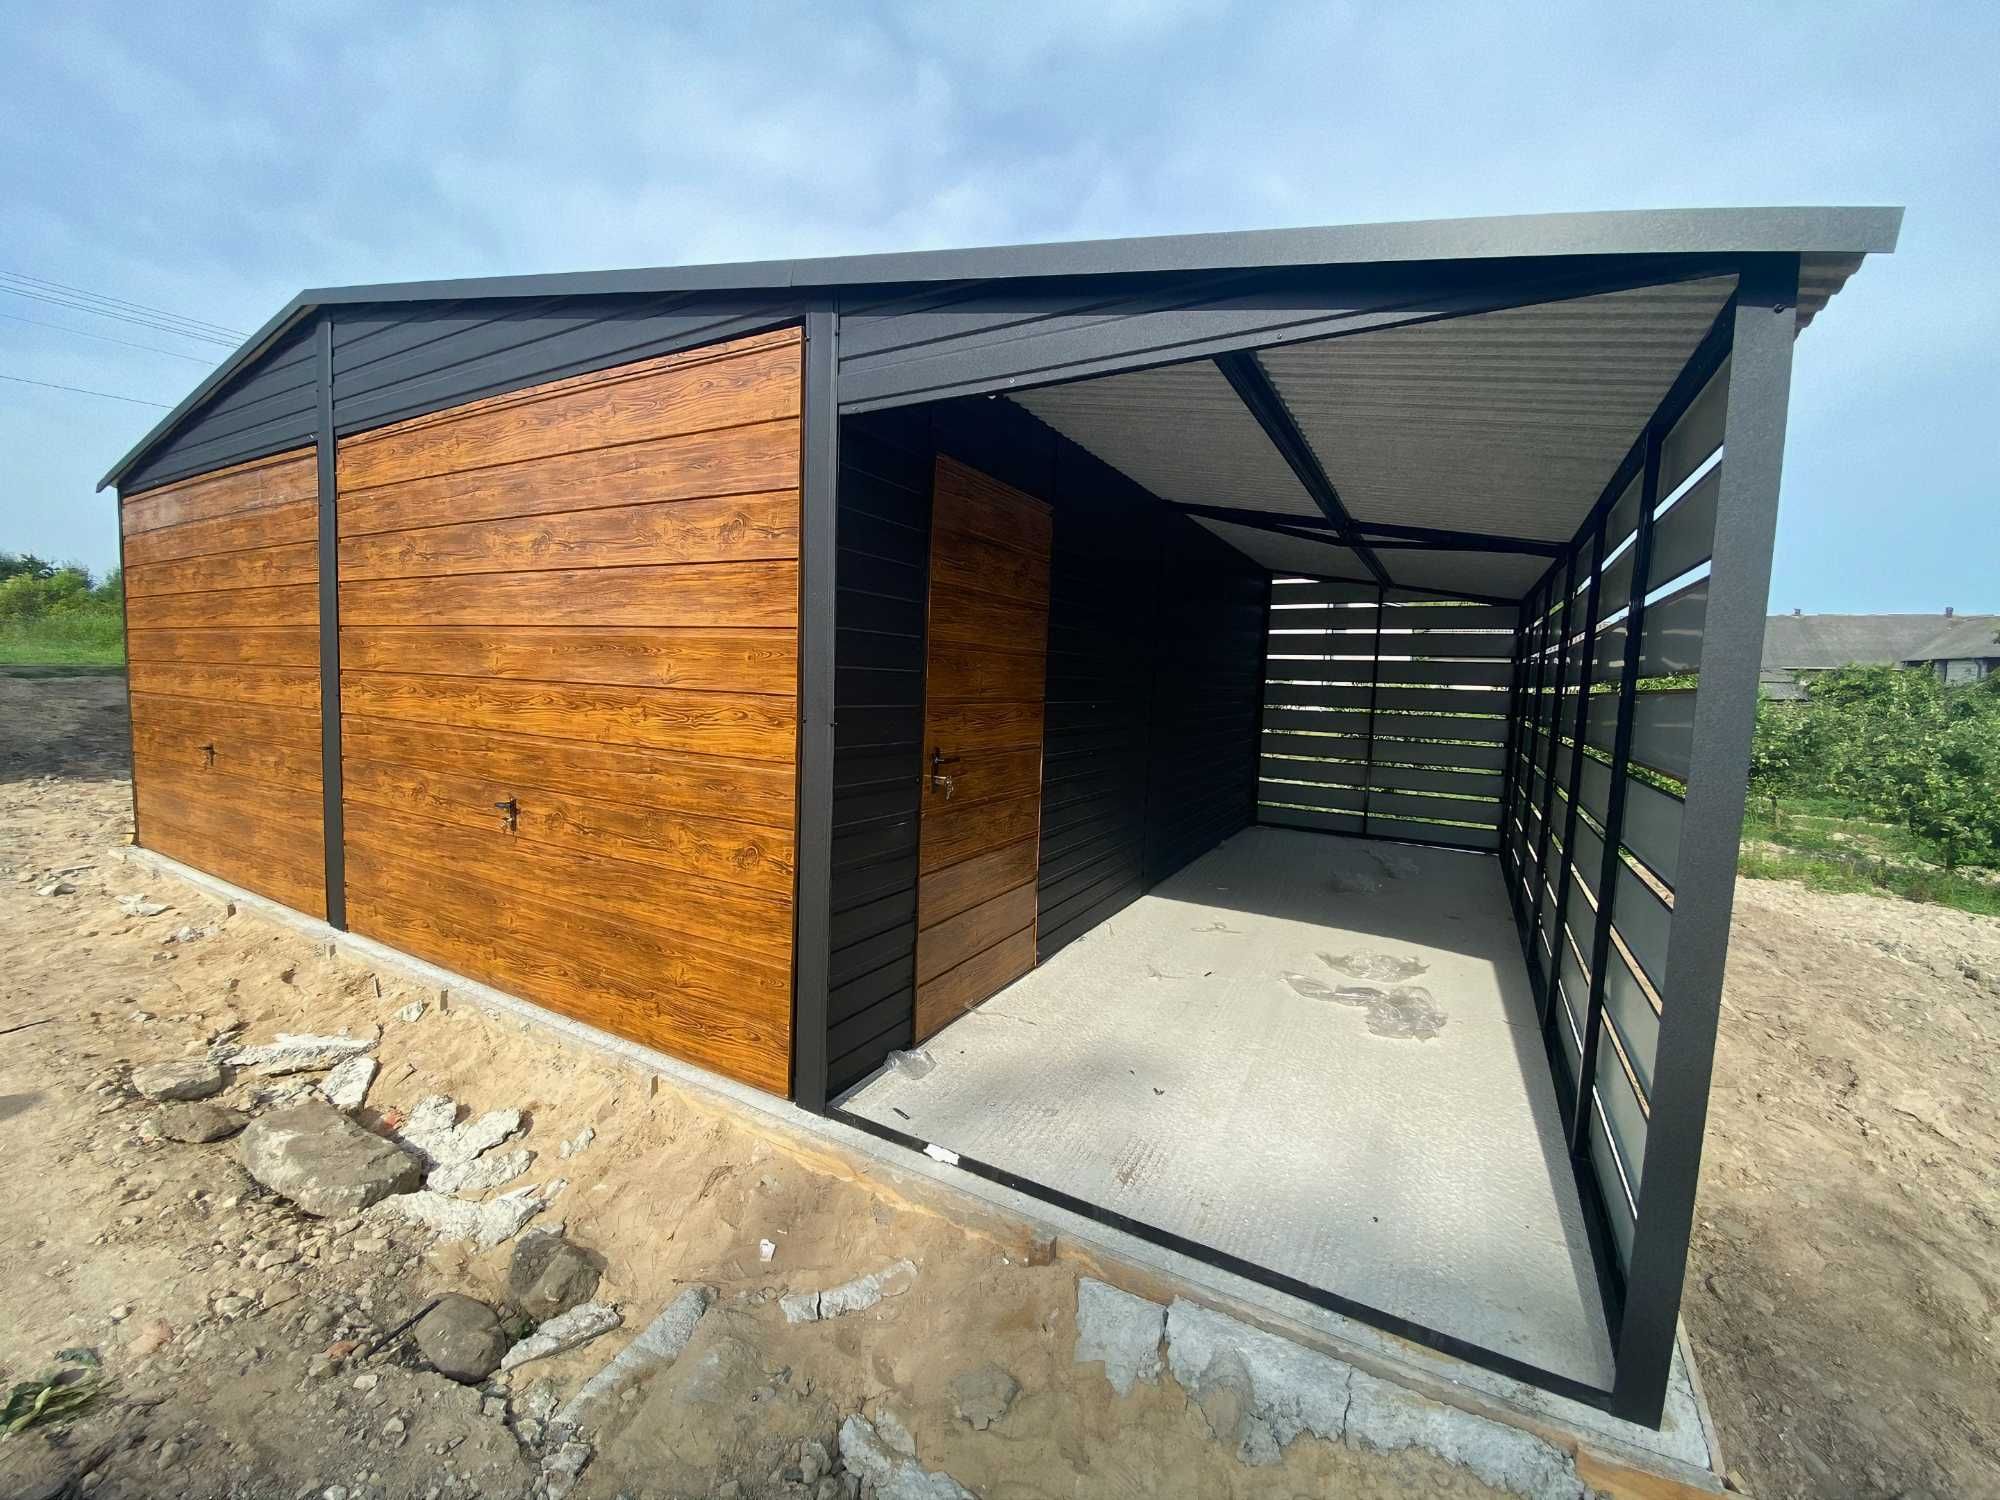 Garaż drewnopodobny garaz blaszany domek ogrodowy schowek 8x6m dostawa